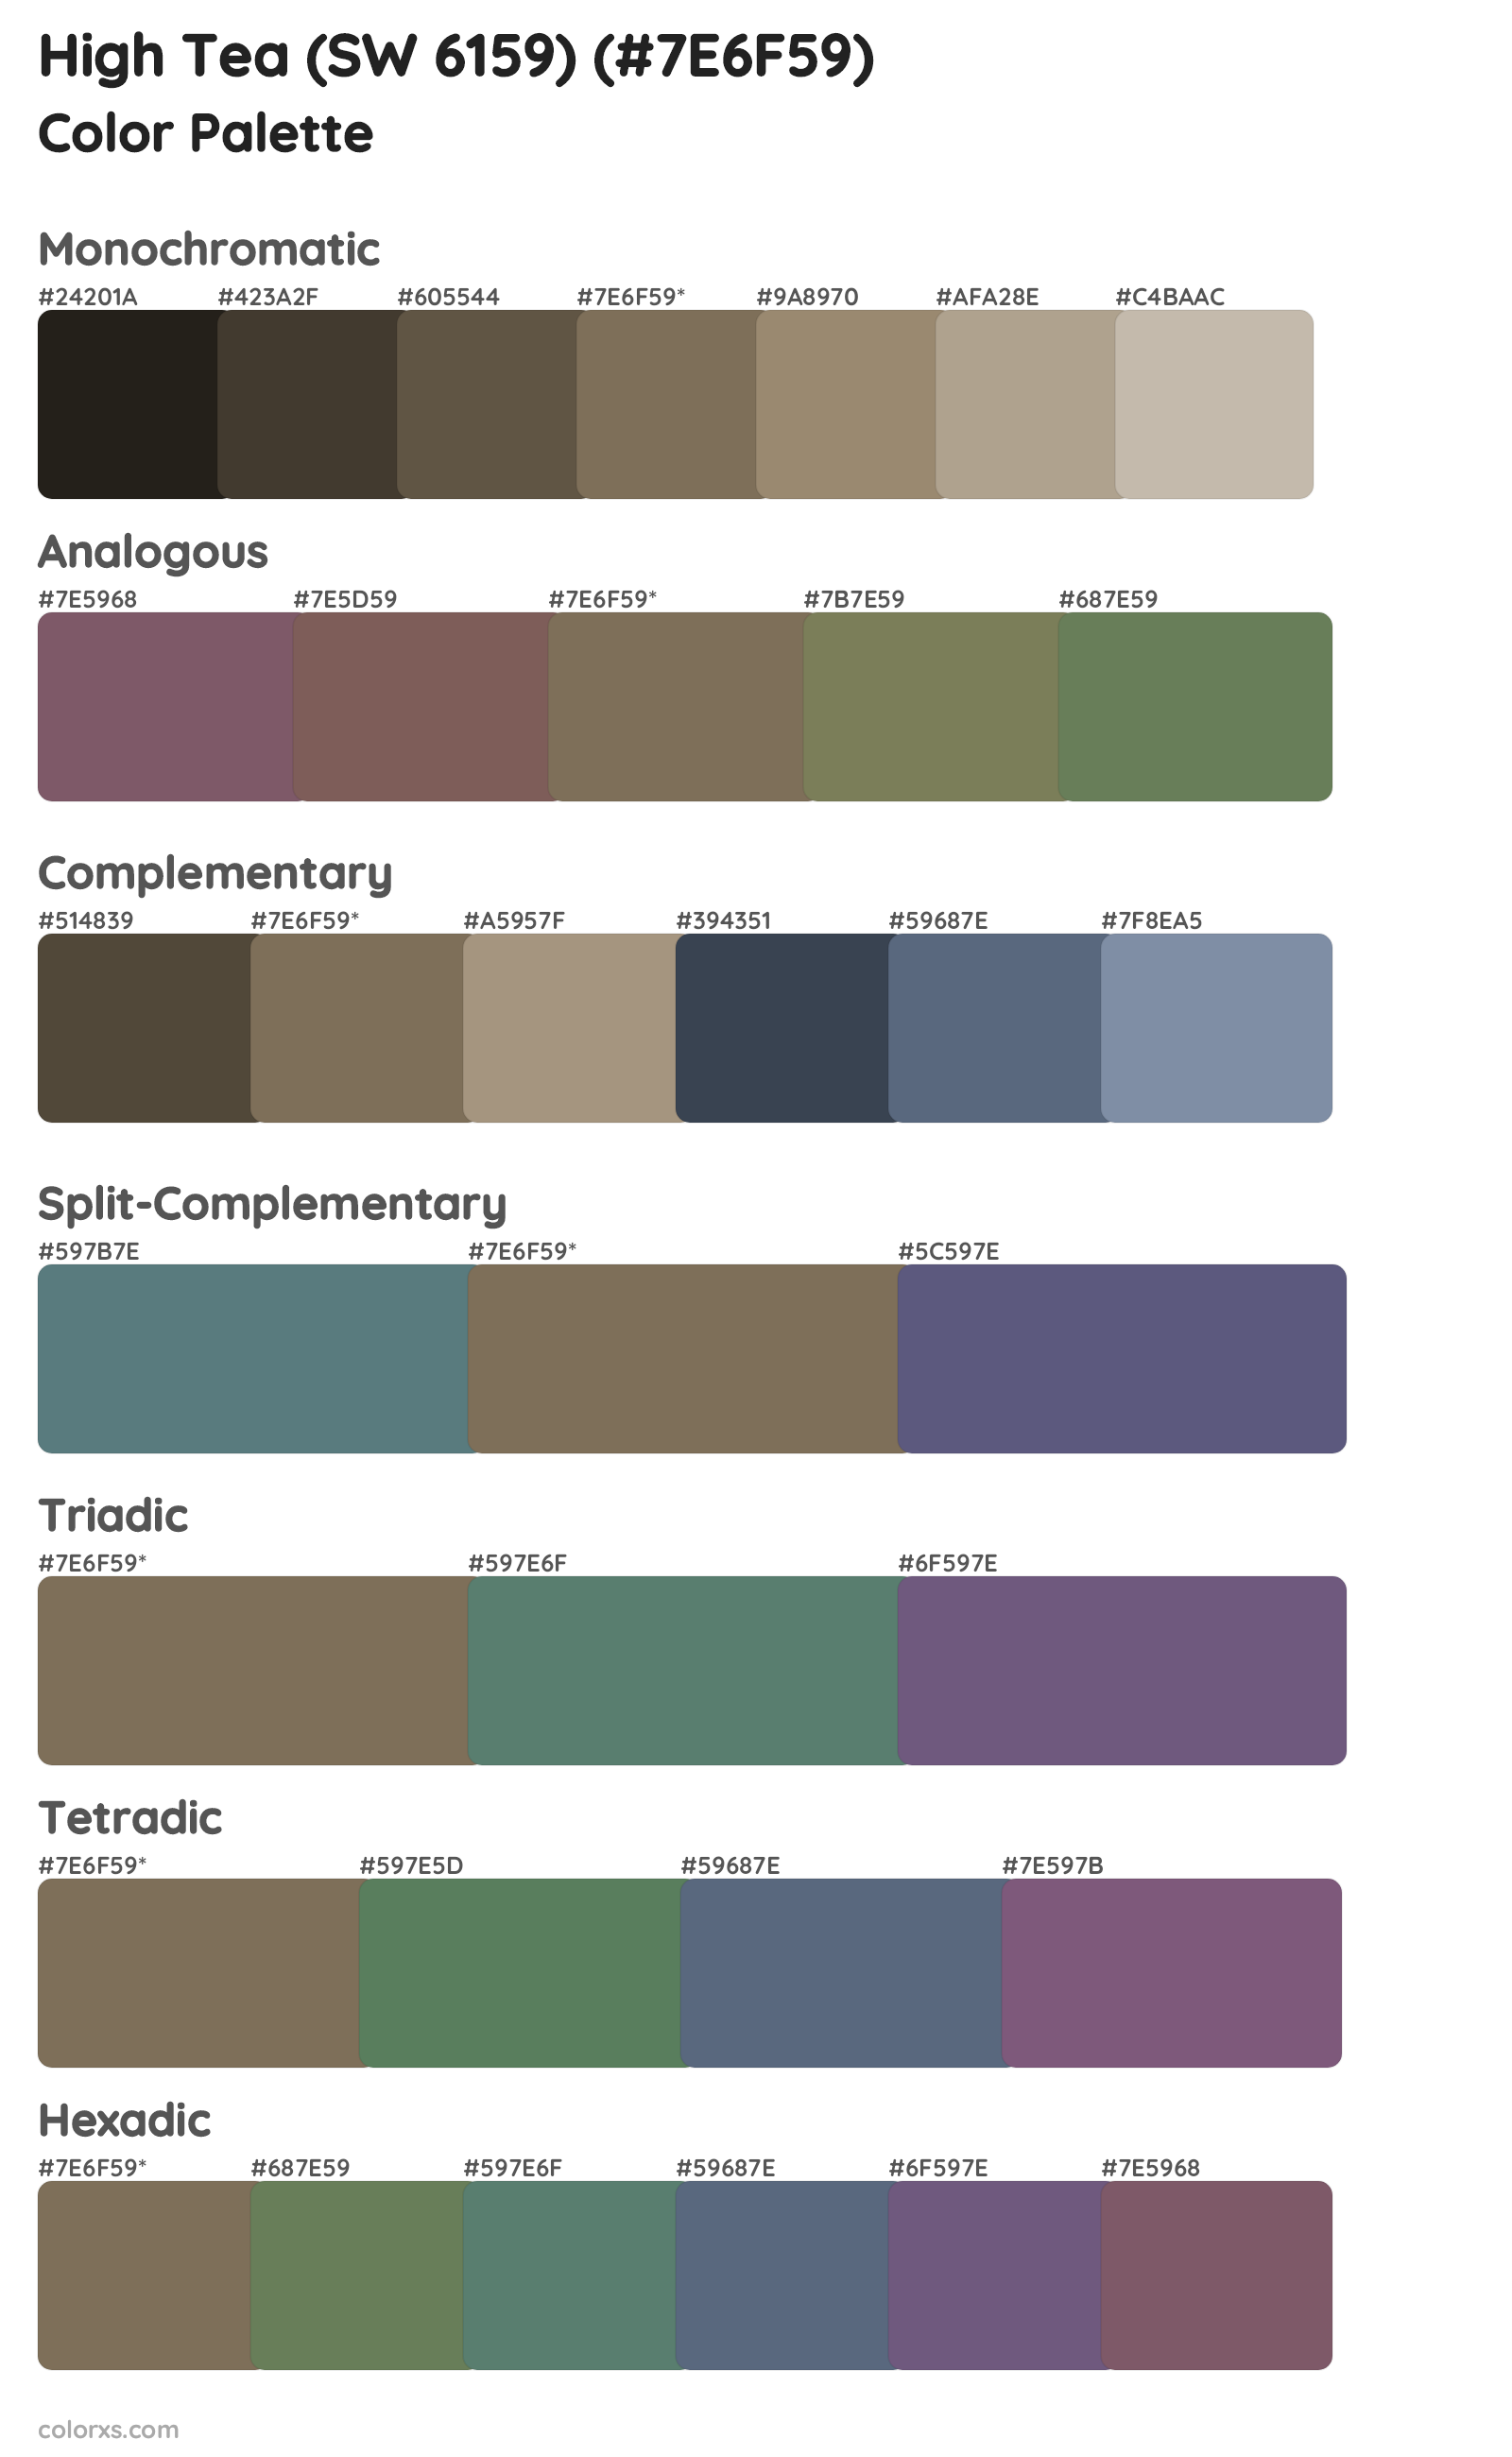 High Tea (SW 6159) Color Scheme Palettes